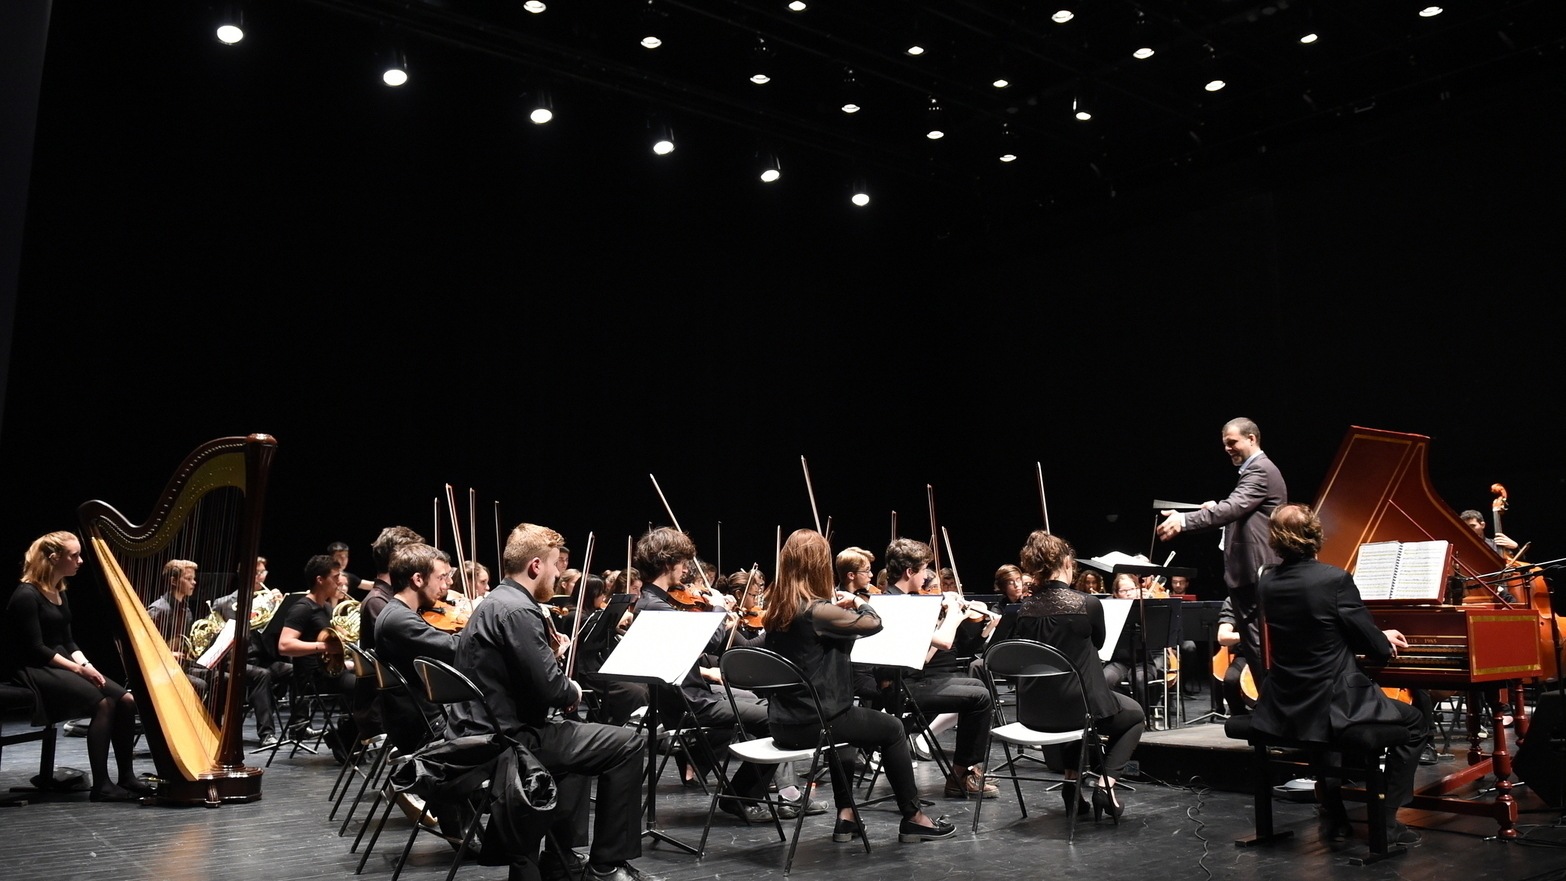 Des concerts gratuits toute l'année au Conservatoire de Montpellier